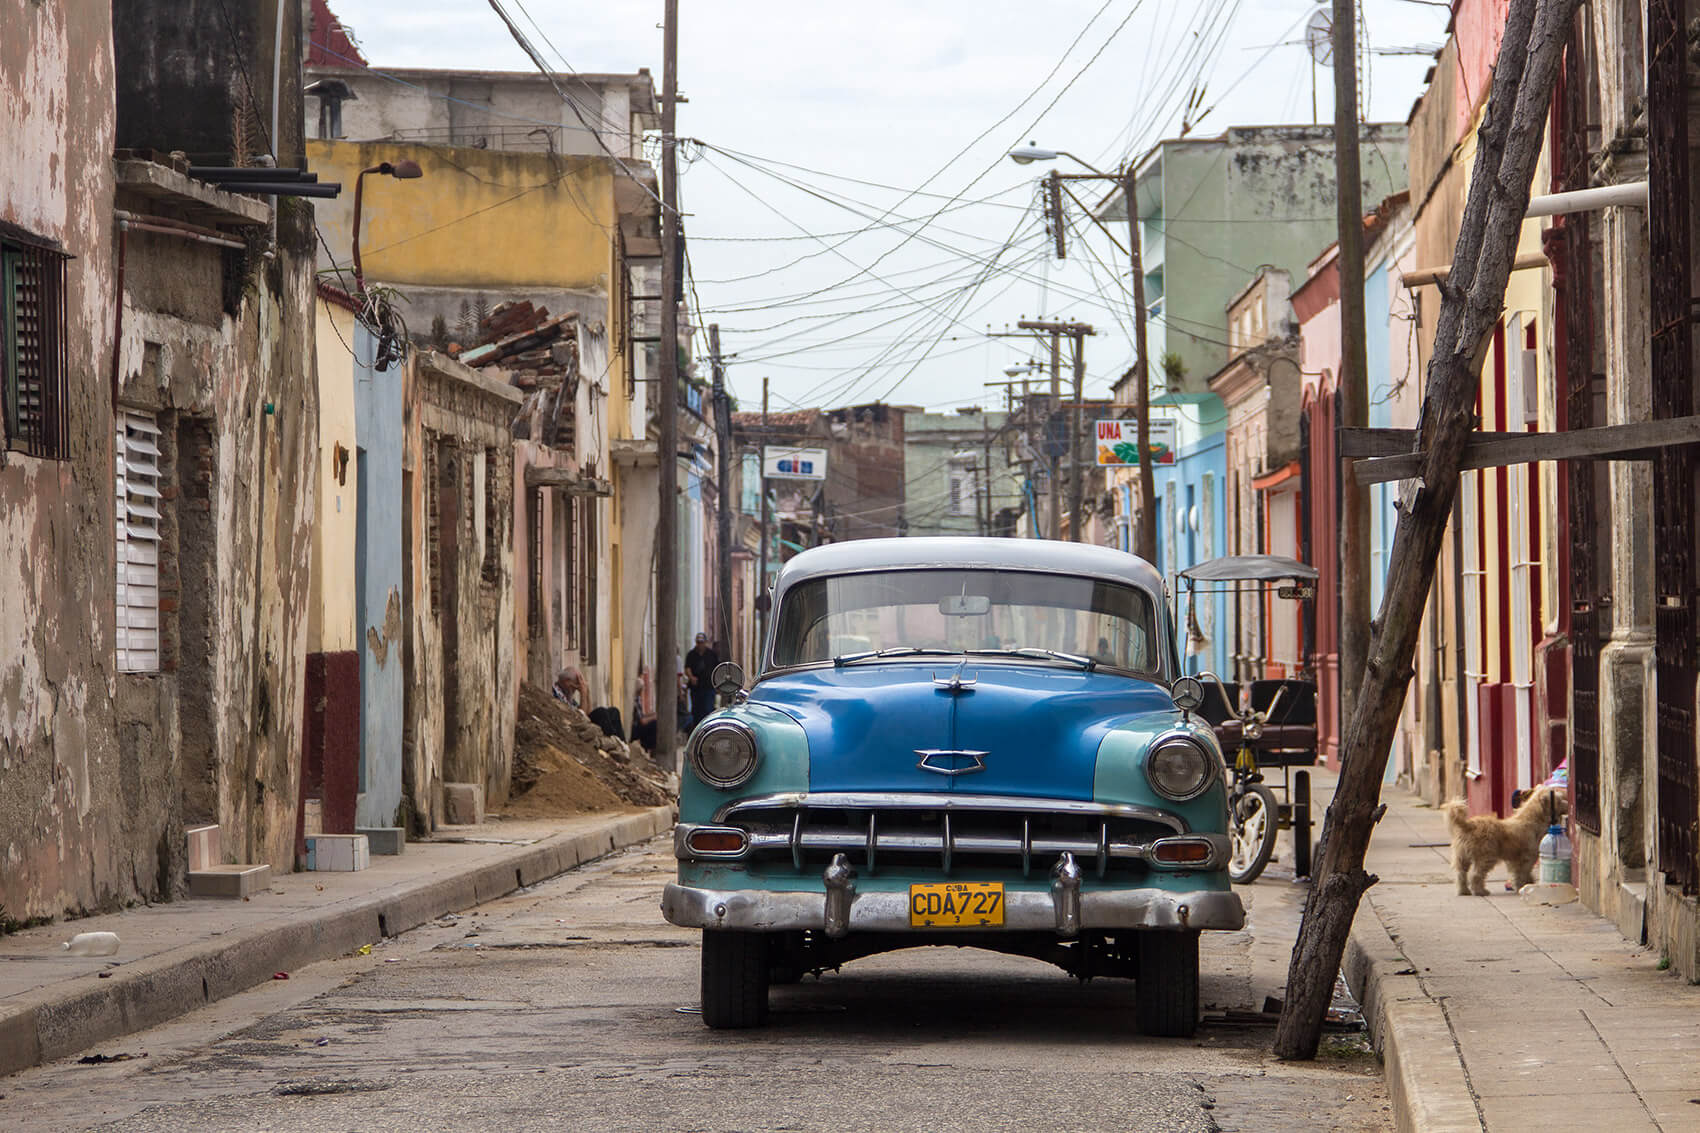 Typical Cuban car in Camagüey